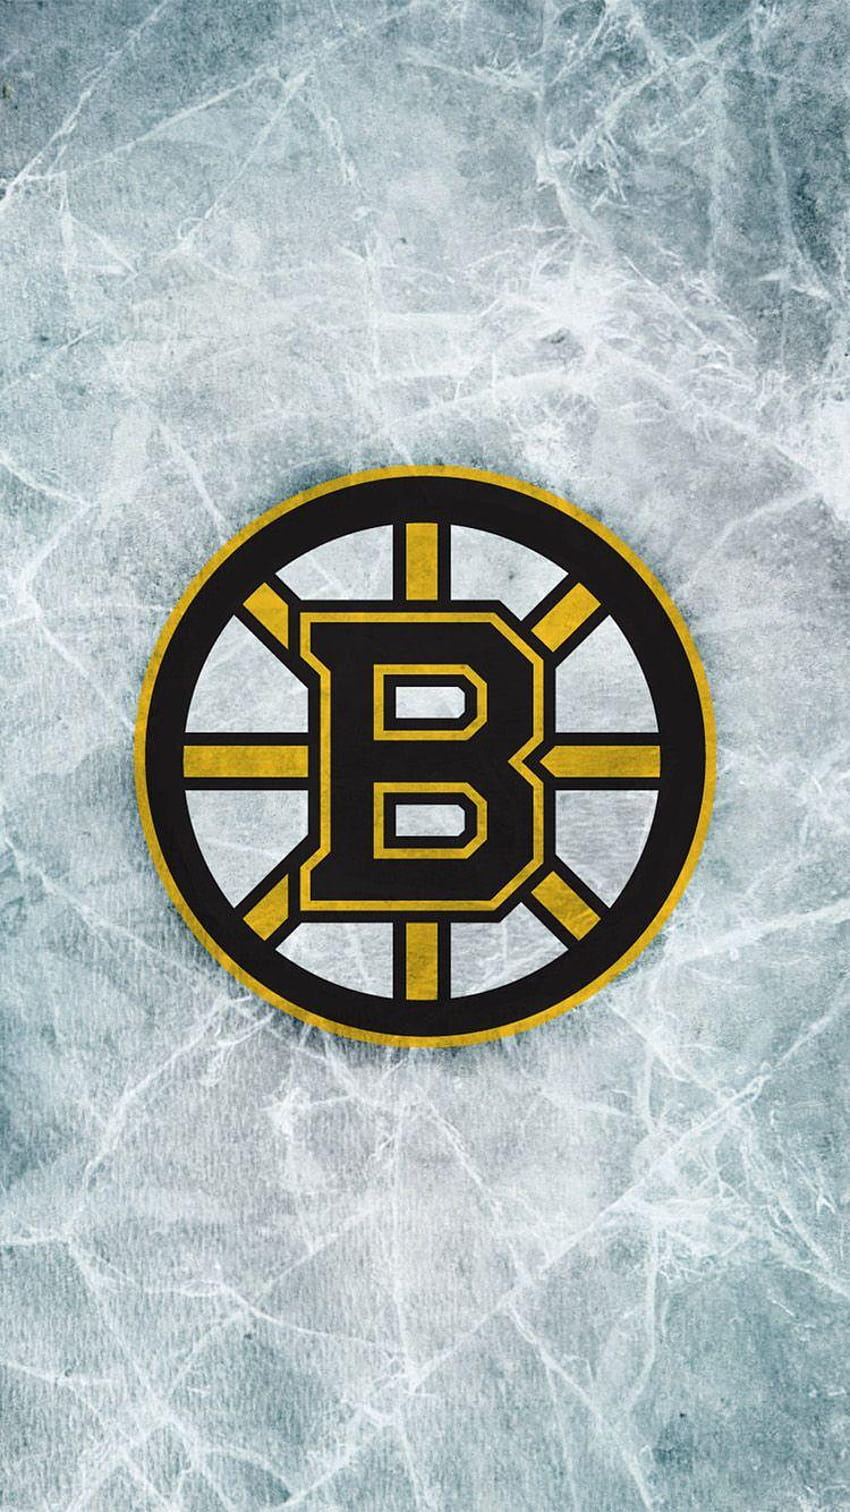 Boston Bruins IPhone , 39 Boston Bruins IPhone, boston bruins mobile HD phone wallpaper